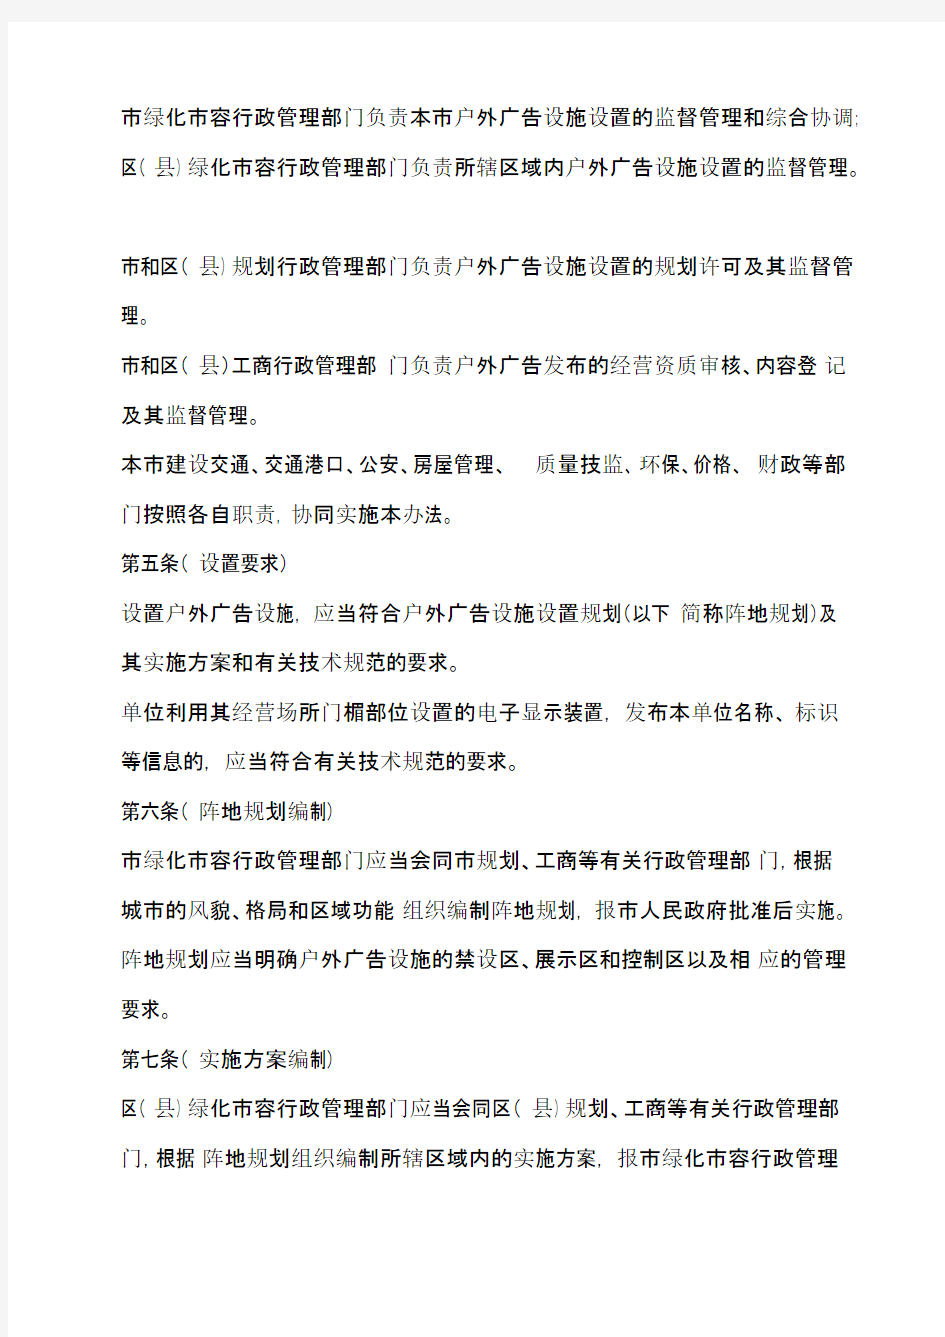 上海市户外广告设施管理办法(56号令)